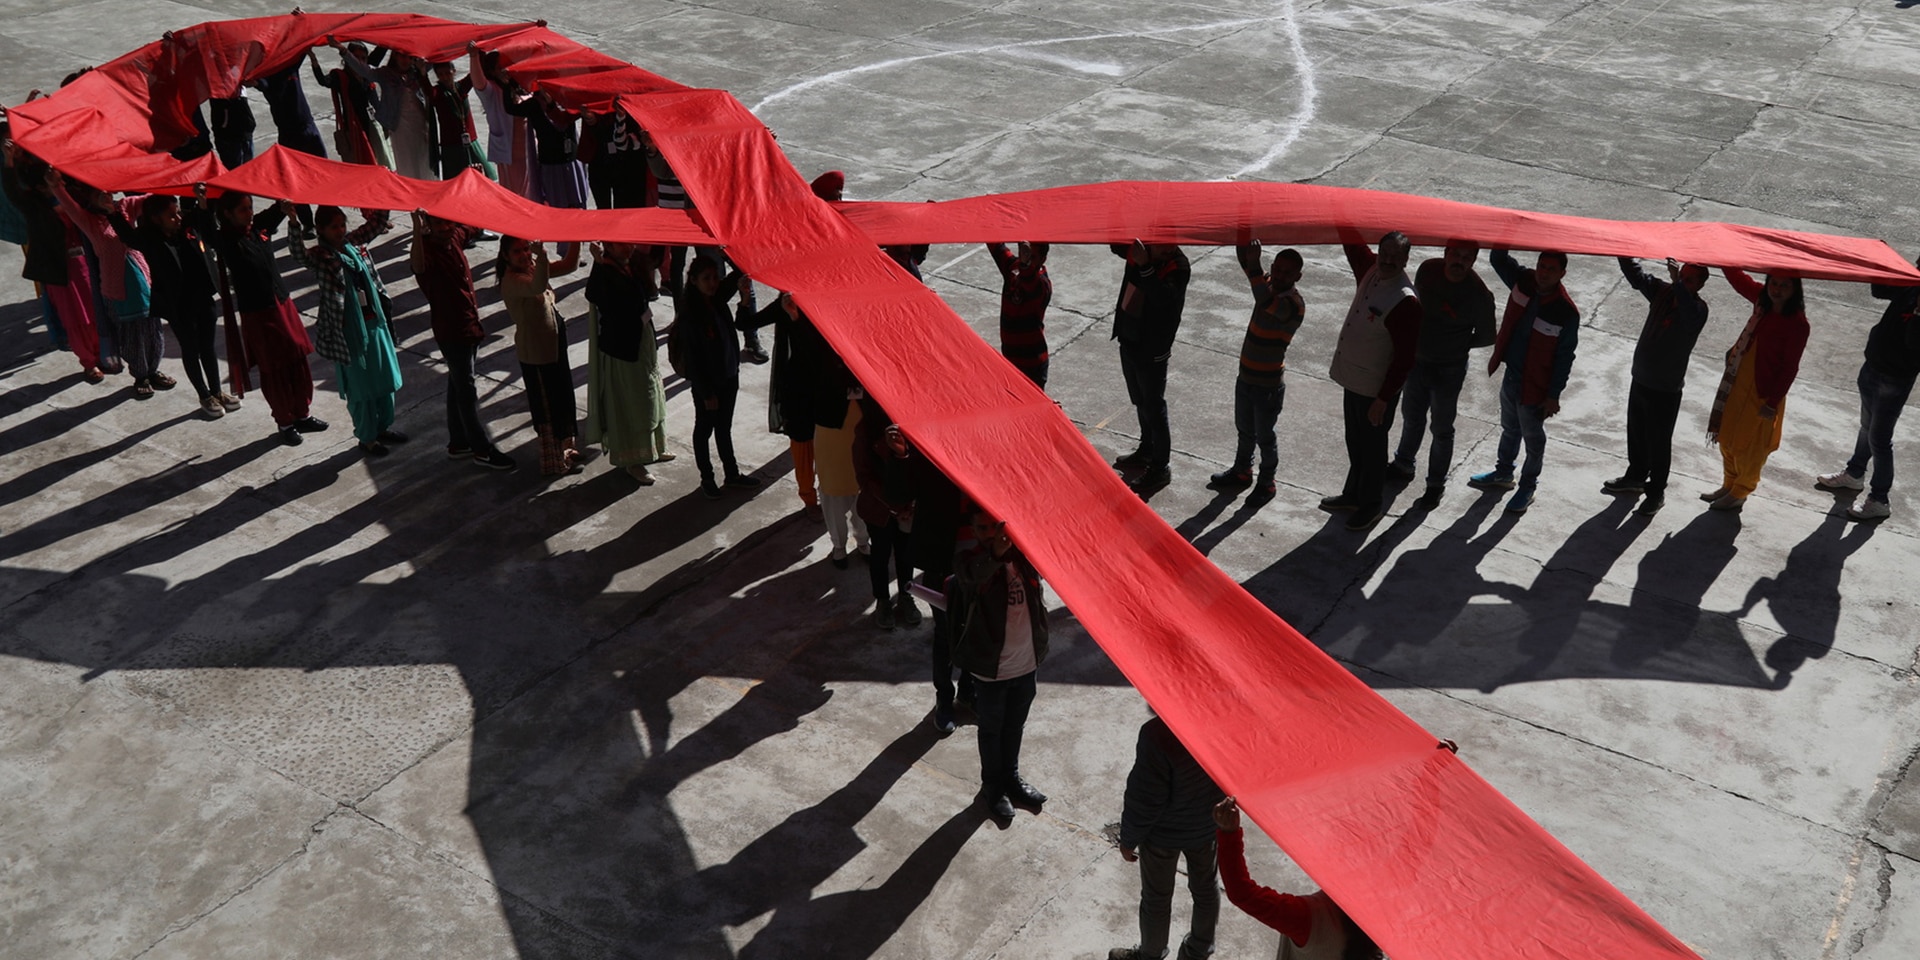 Des personnes soulèvent ensemble un long ruban rouge au-dessus de leur tête pour former une boucle et représenter le symbole international de la lutte contre le sida.